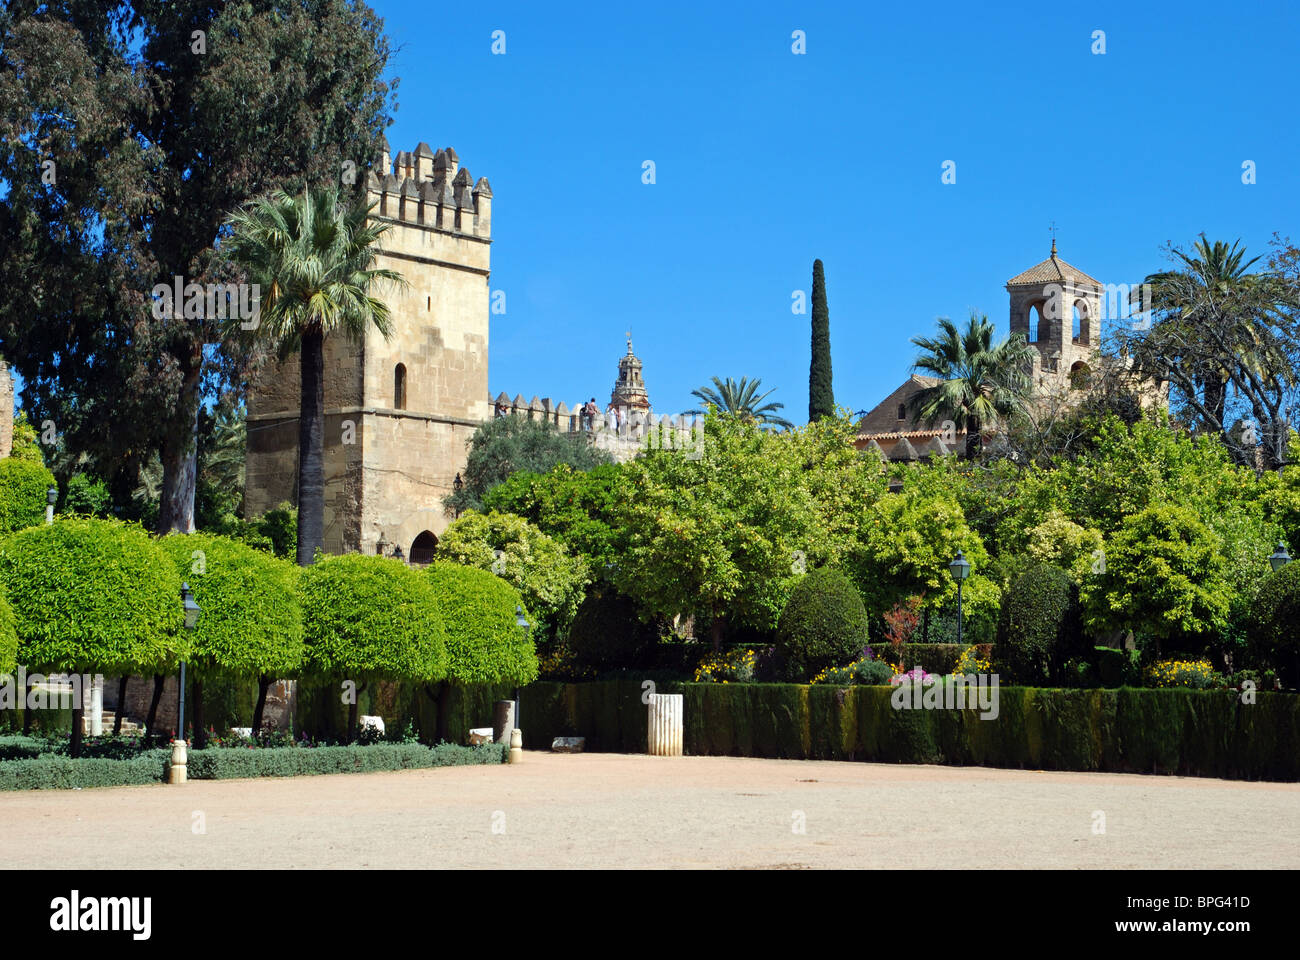 Palace Forteresse des Rois Chrétiens - tour du château et jardins, Córdoba, Cordoue, Andalousie, province de l'Espagne, l'Europe de l'Ouest. Banque D'Images